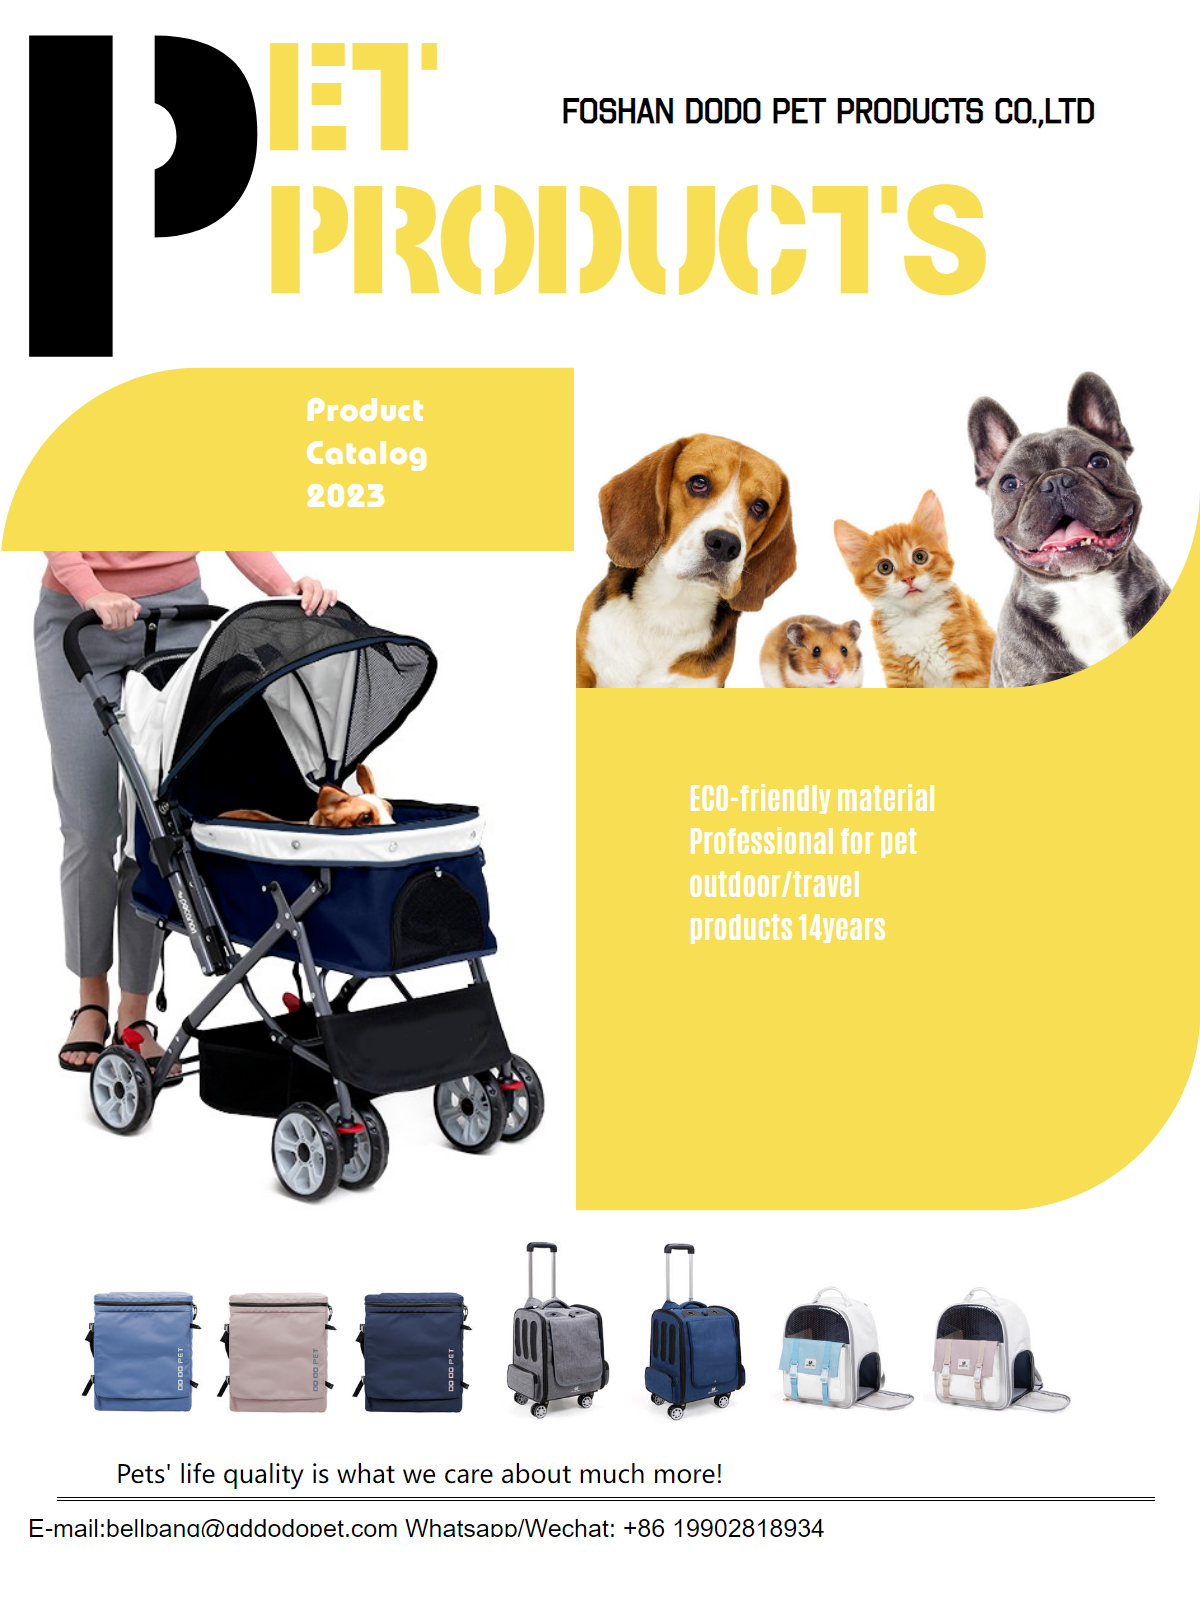 Pet strollers -2023 foshan dodo pet products co.ltd